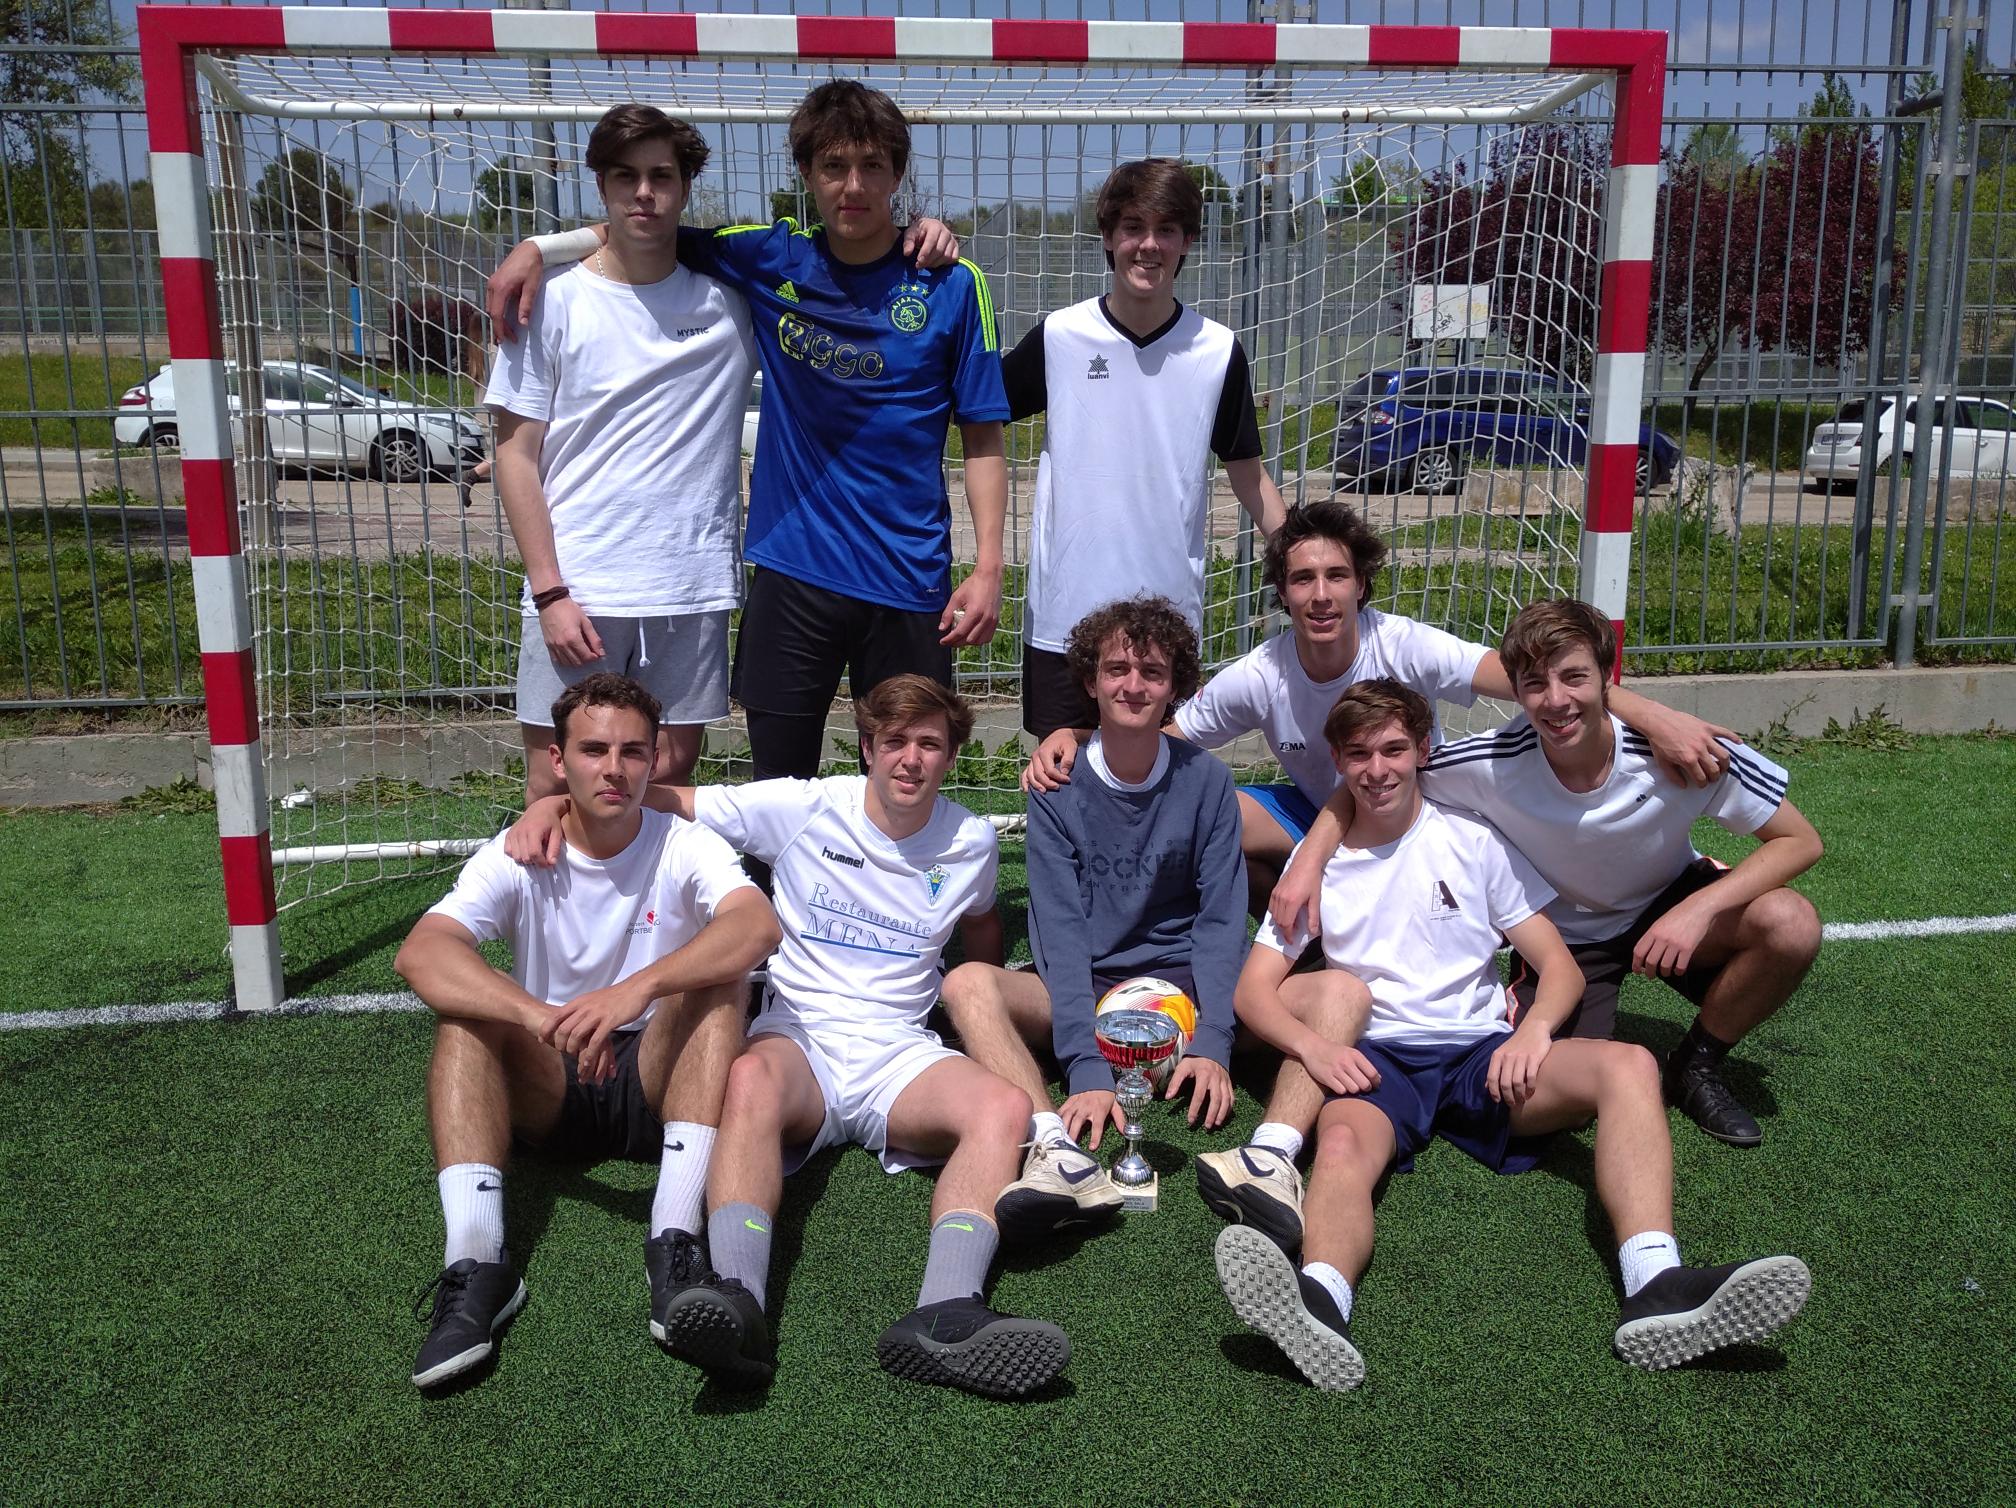 Equipo La Dadeneta: Campeones del Torneo de Primavera de Fútbol-sala